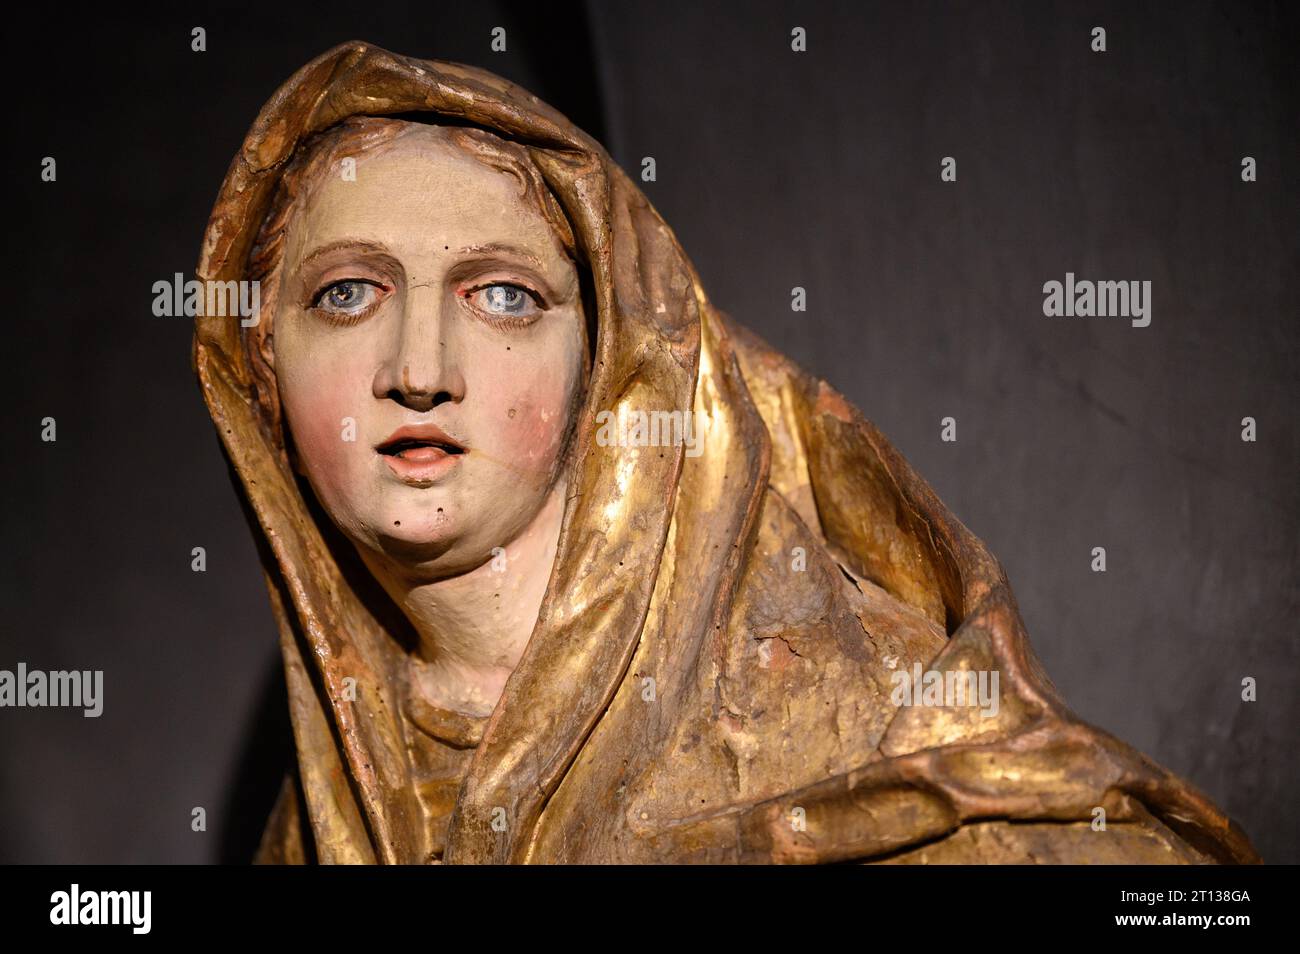 La Vierge Marie. La première moitié du 18e siècle. De Hnanice, République tchèque. Actuellement au Musée diocésain de Brno. Banque D'Images